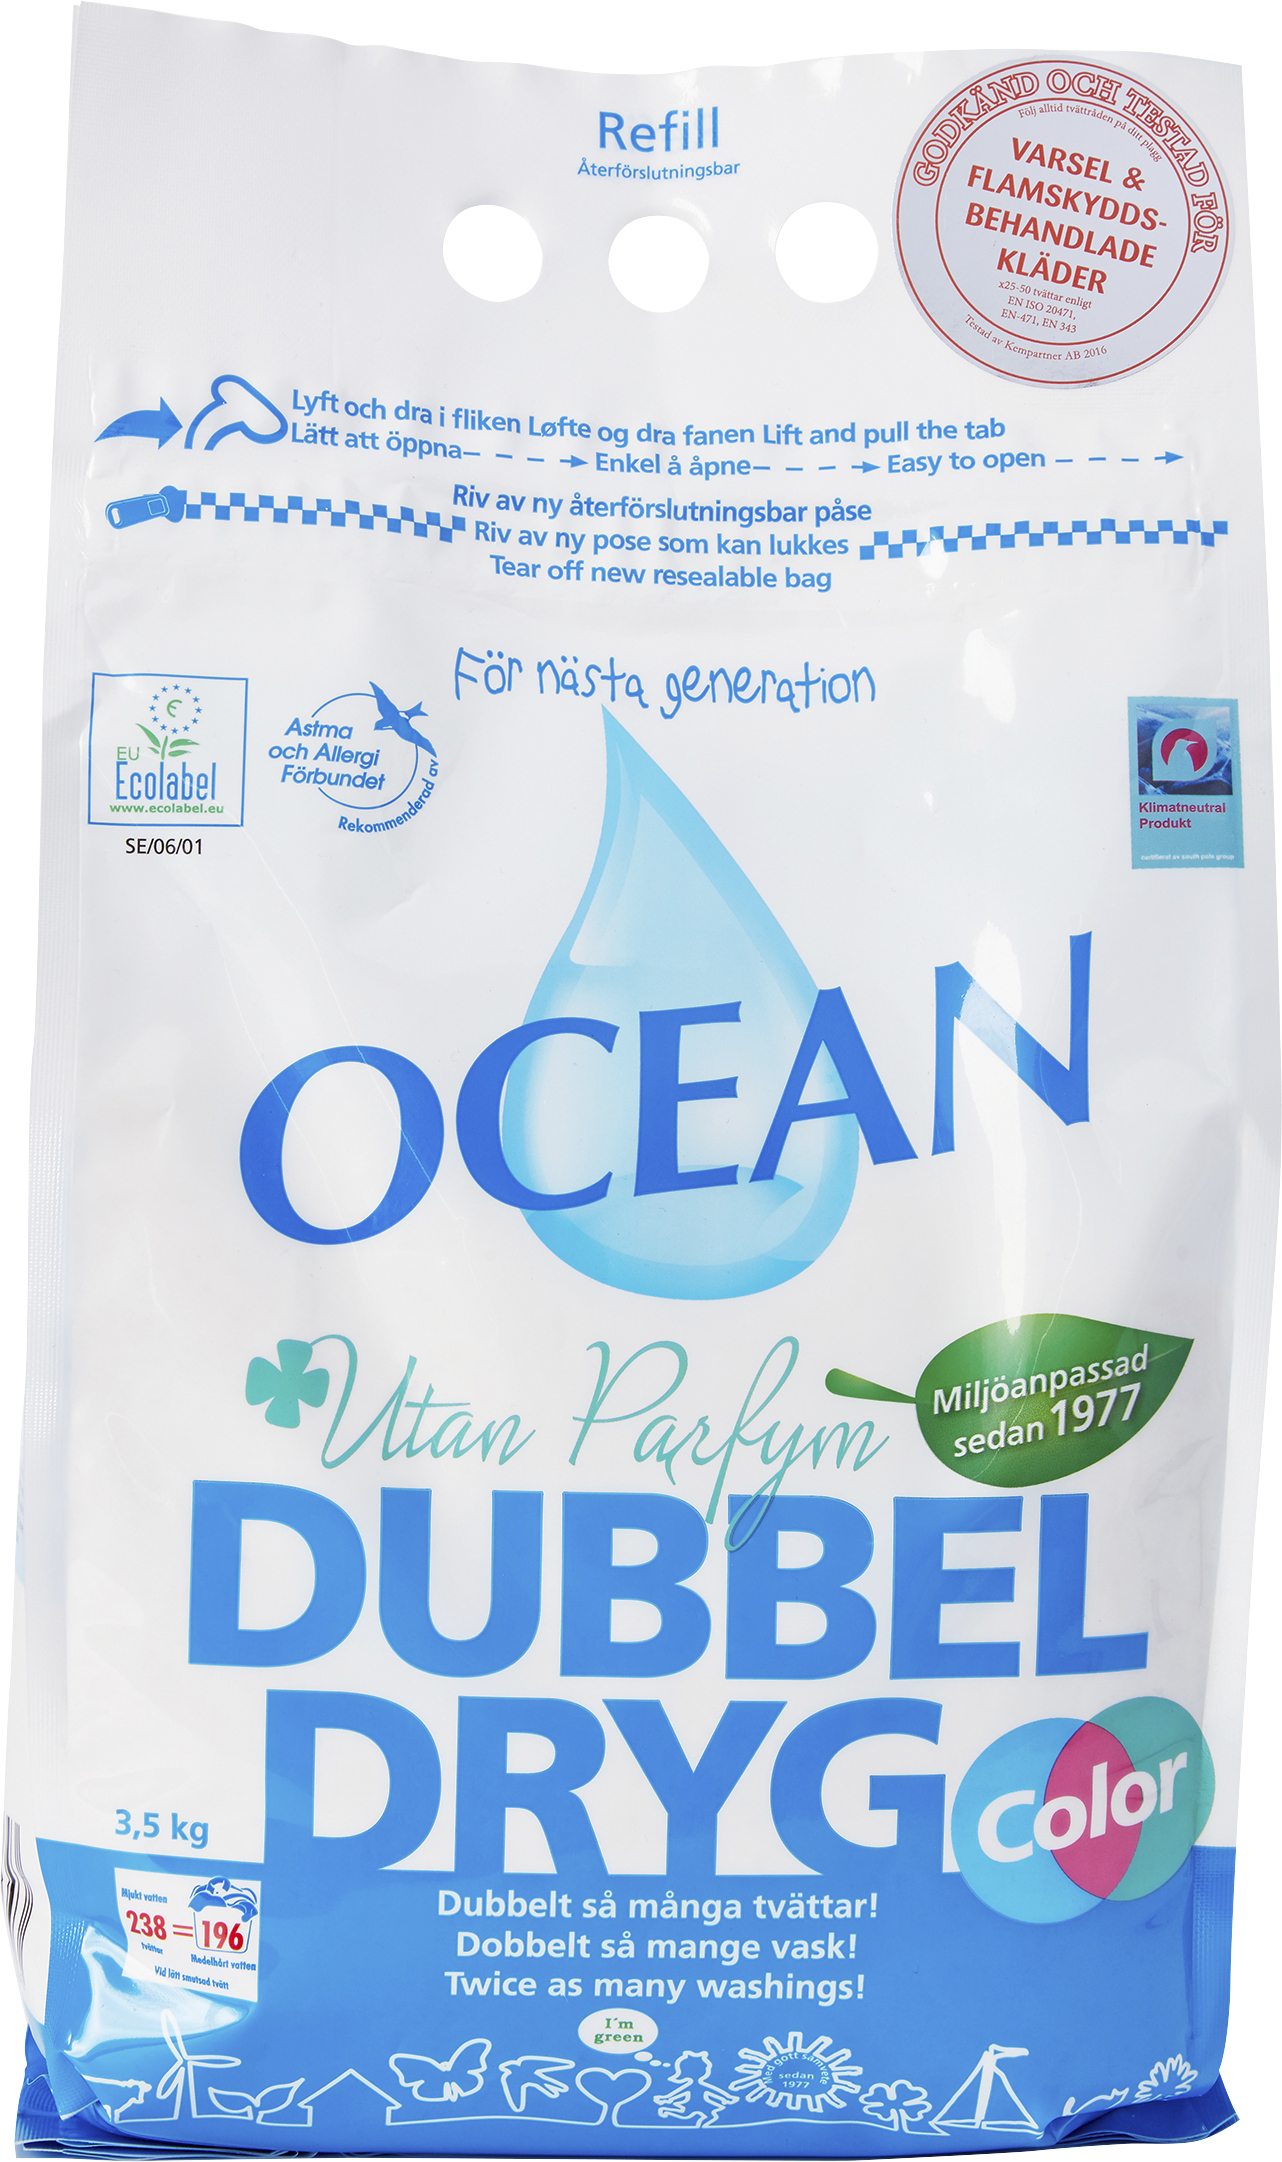 Tvättmedel Dubbeldryg Ocean Oparfymerad Refill 3,5kg